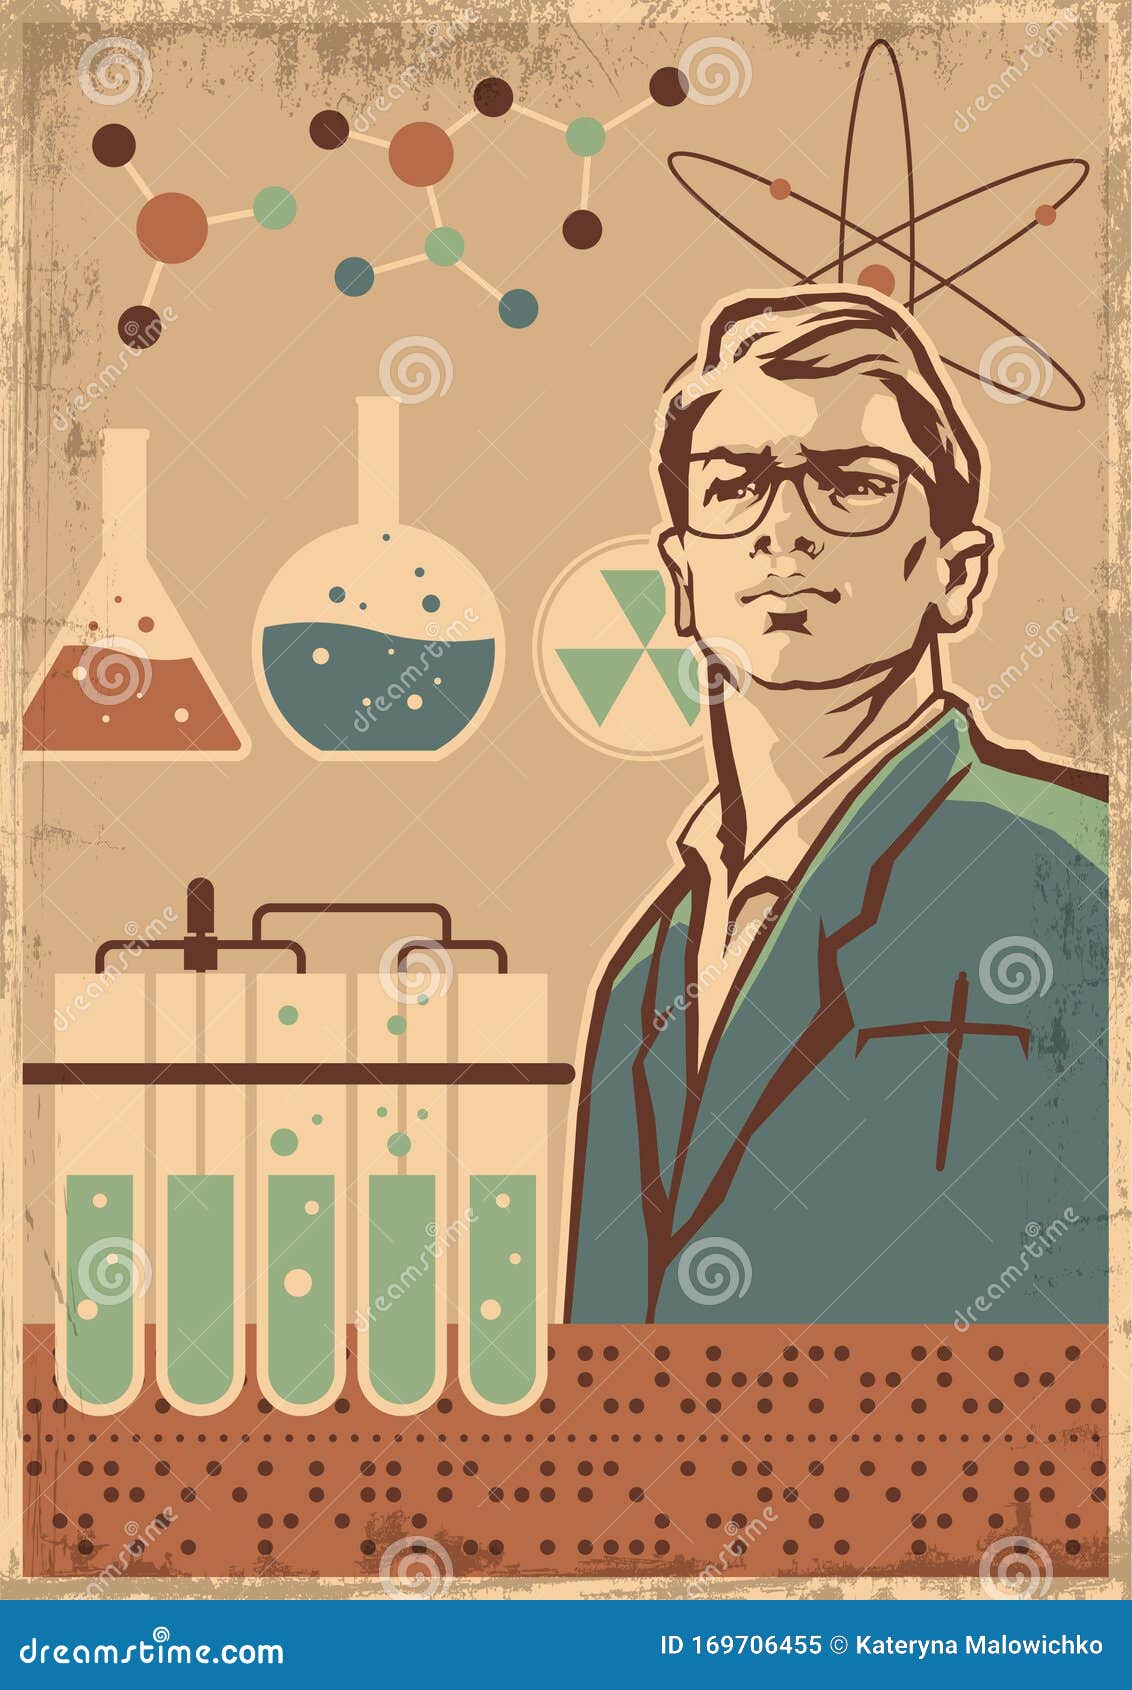 retro style science propaganda poster